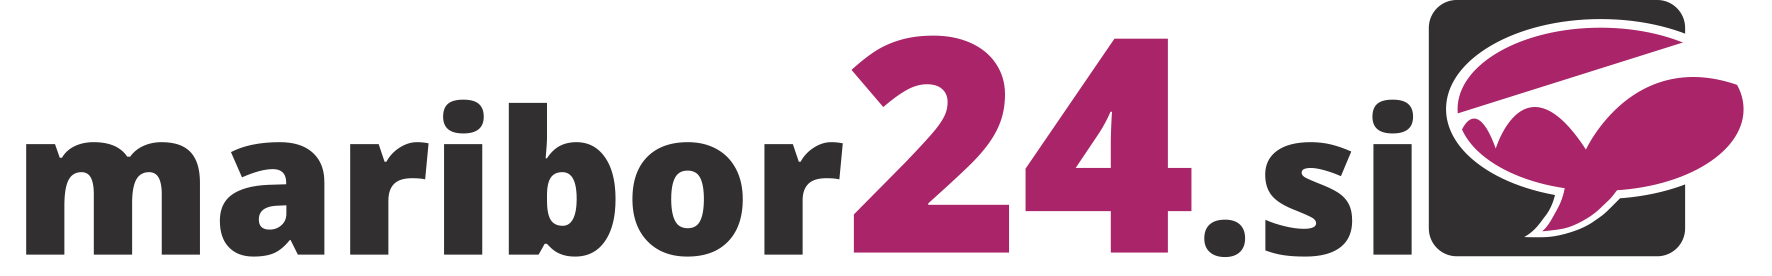 mb24_logo.png